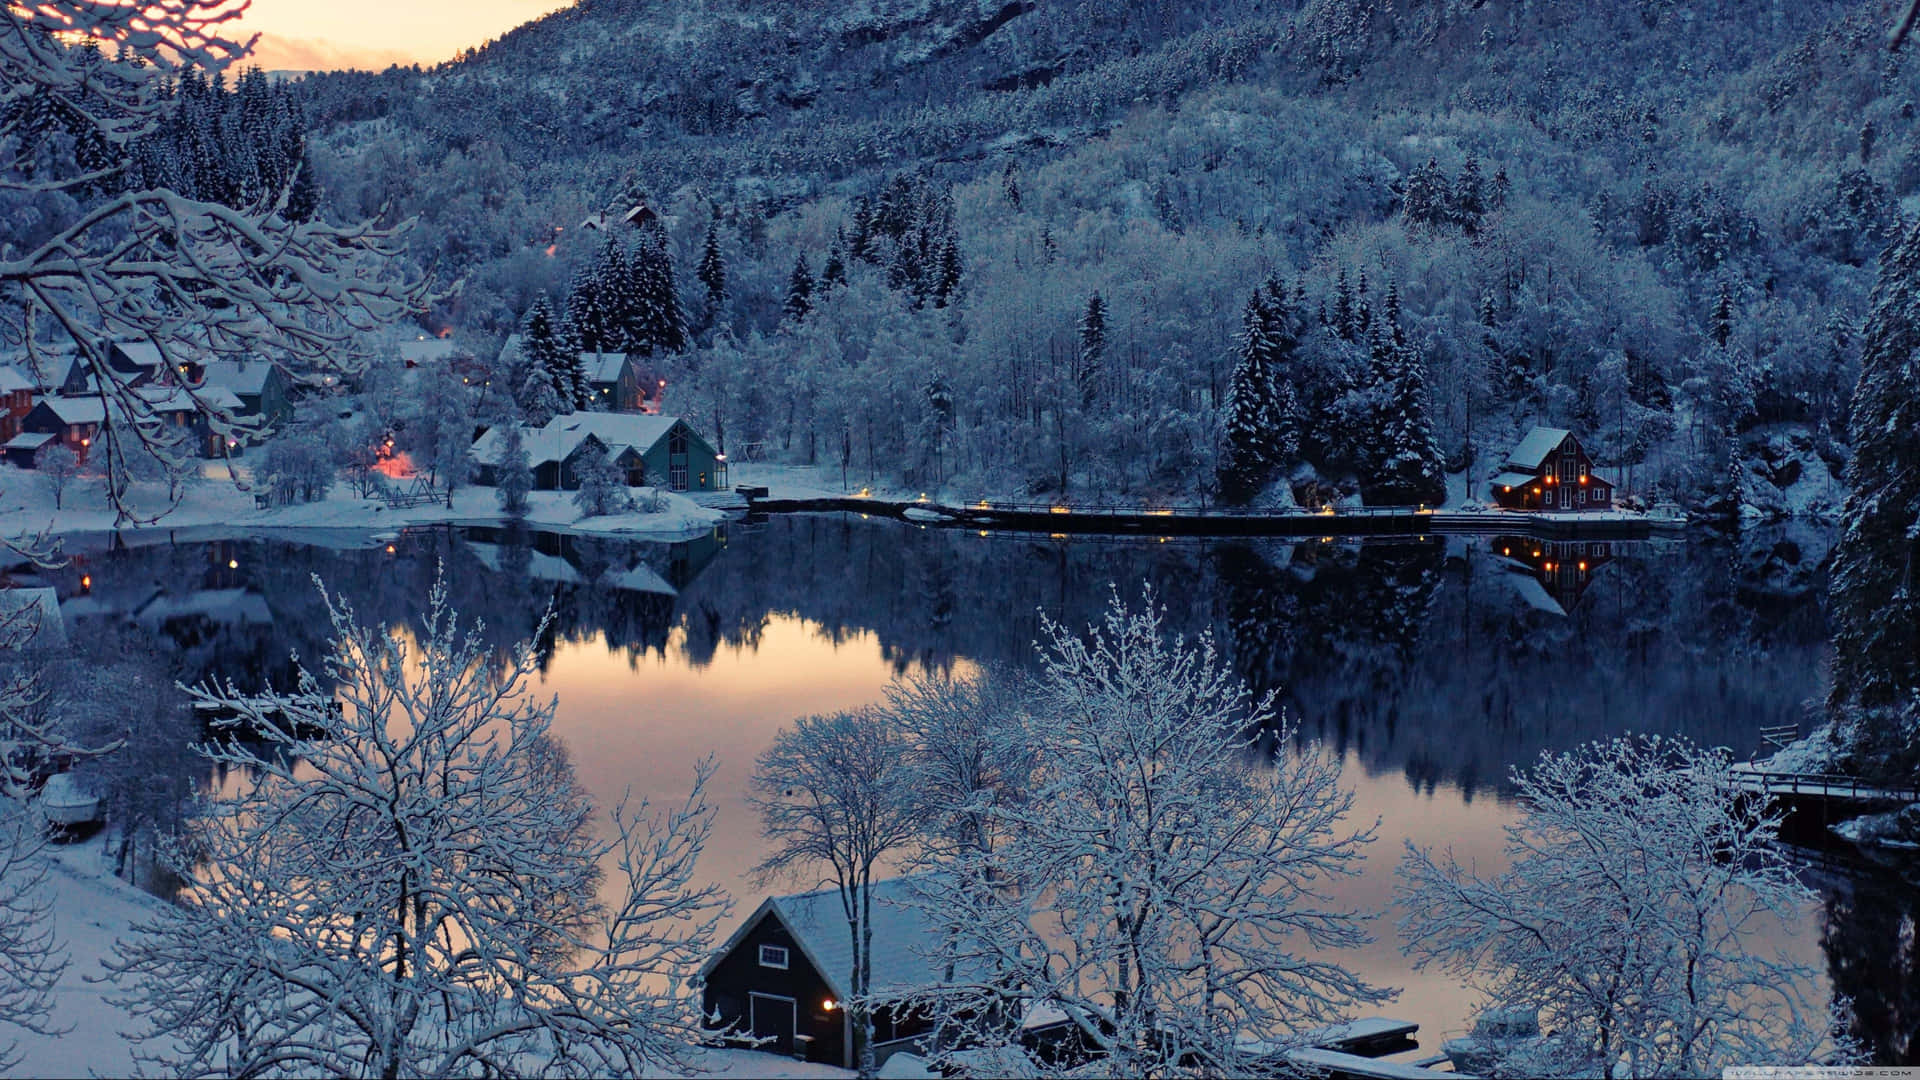 Lospinos Cubiertos De Nieve Y El Lago Congelado Le Confieren Belleza A Un Frío Día De Invierno. Fondo de pantalla